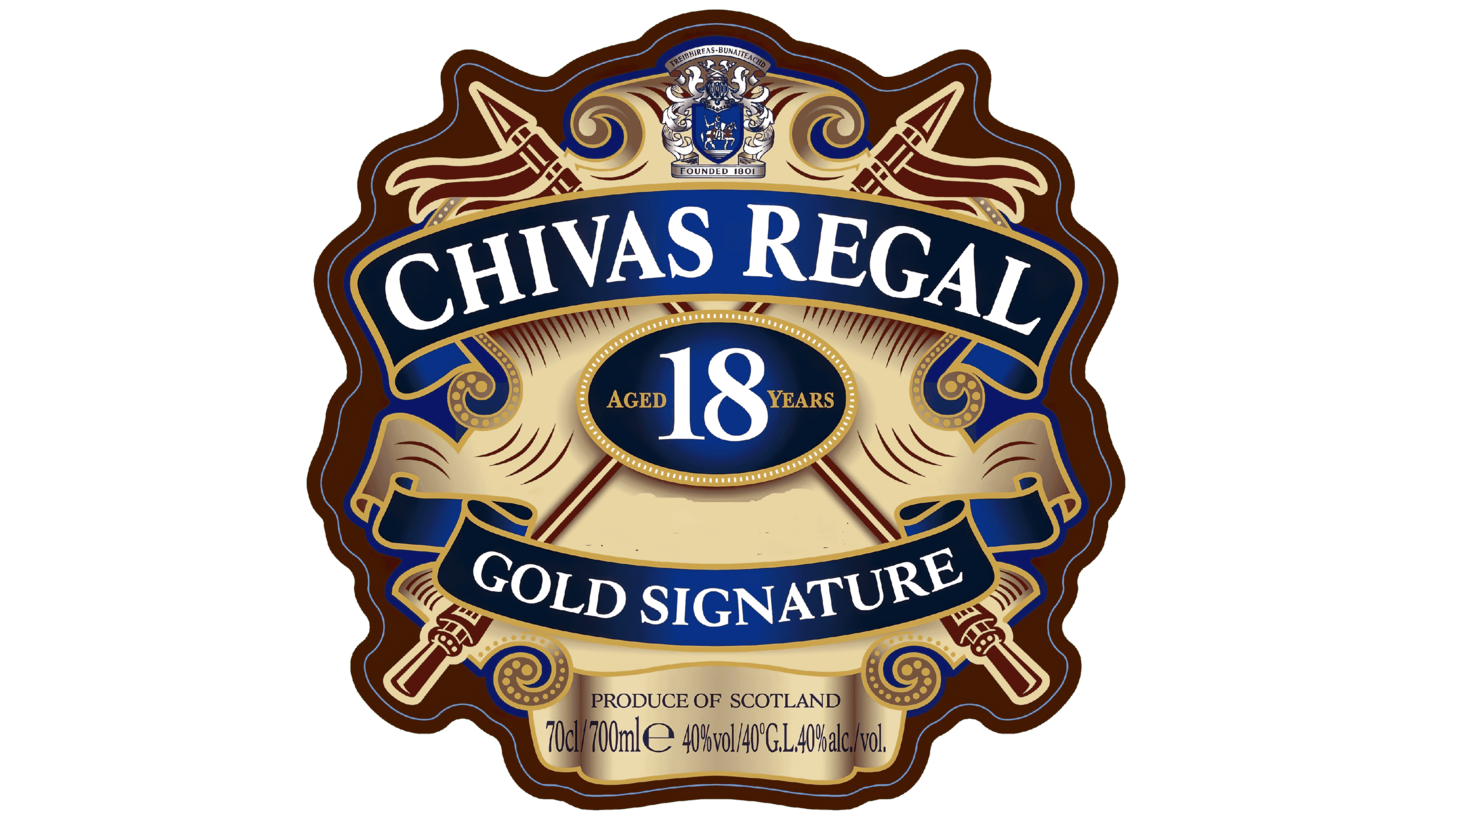 Chivas regal sign